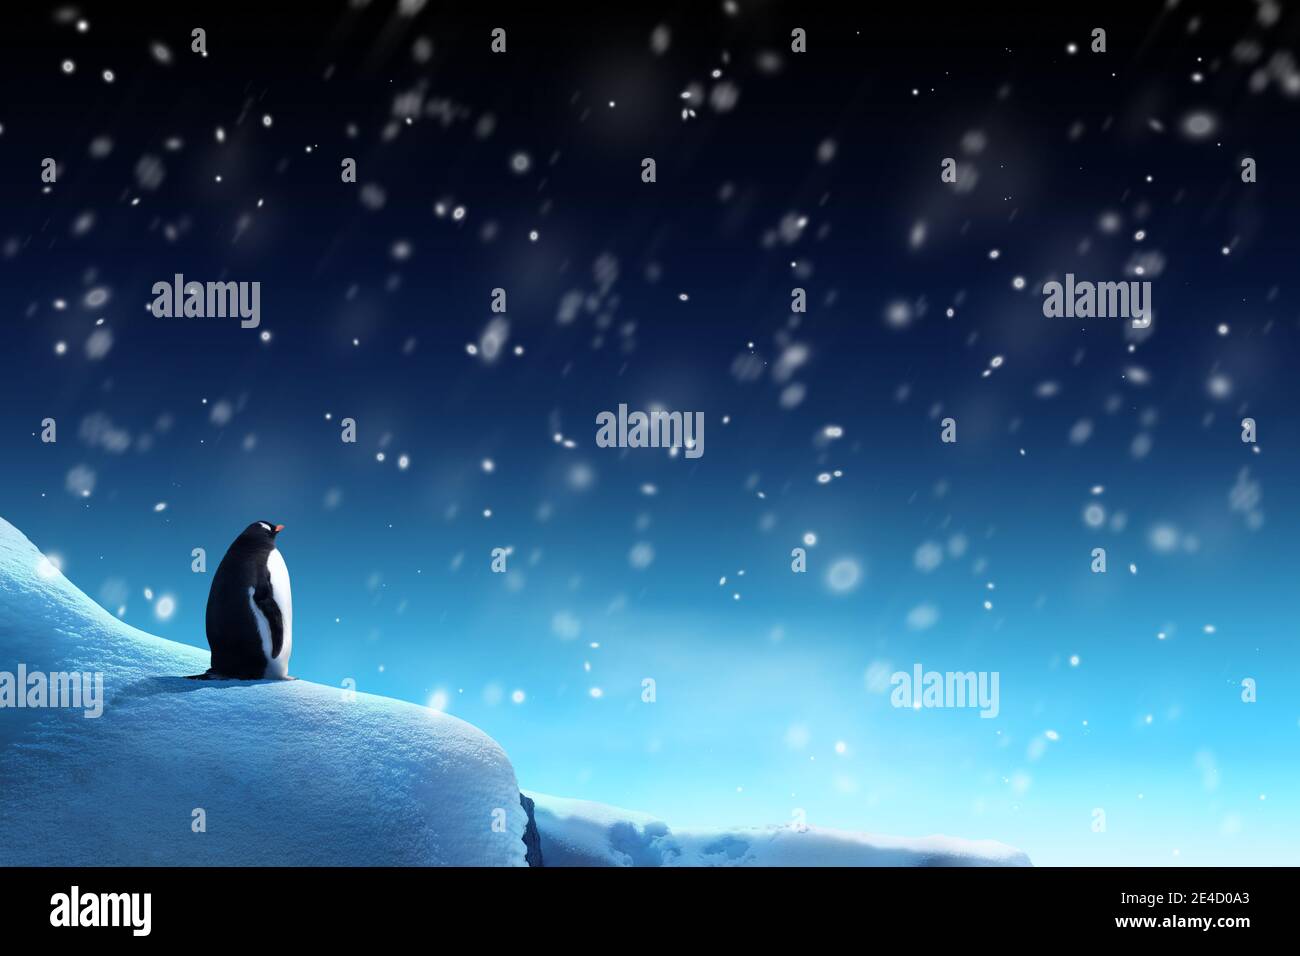 Scena notturna invernale con un pinguino che guarda la neve che cade. Tema delle feste di Natale. Foto Stock